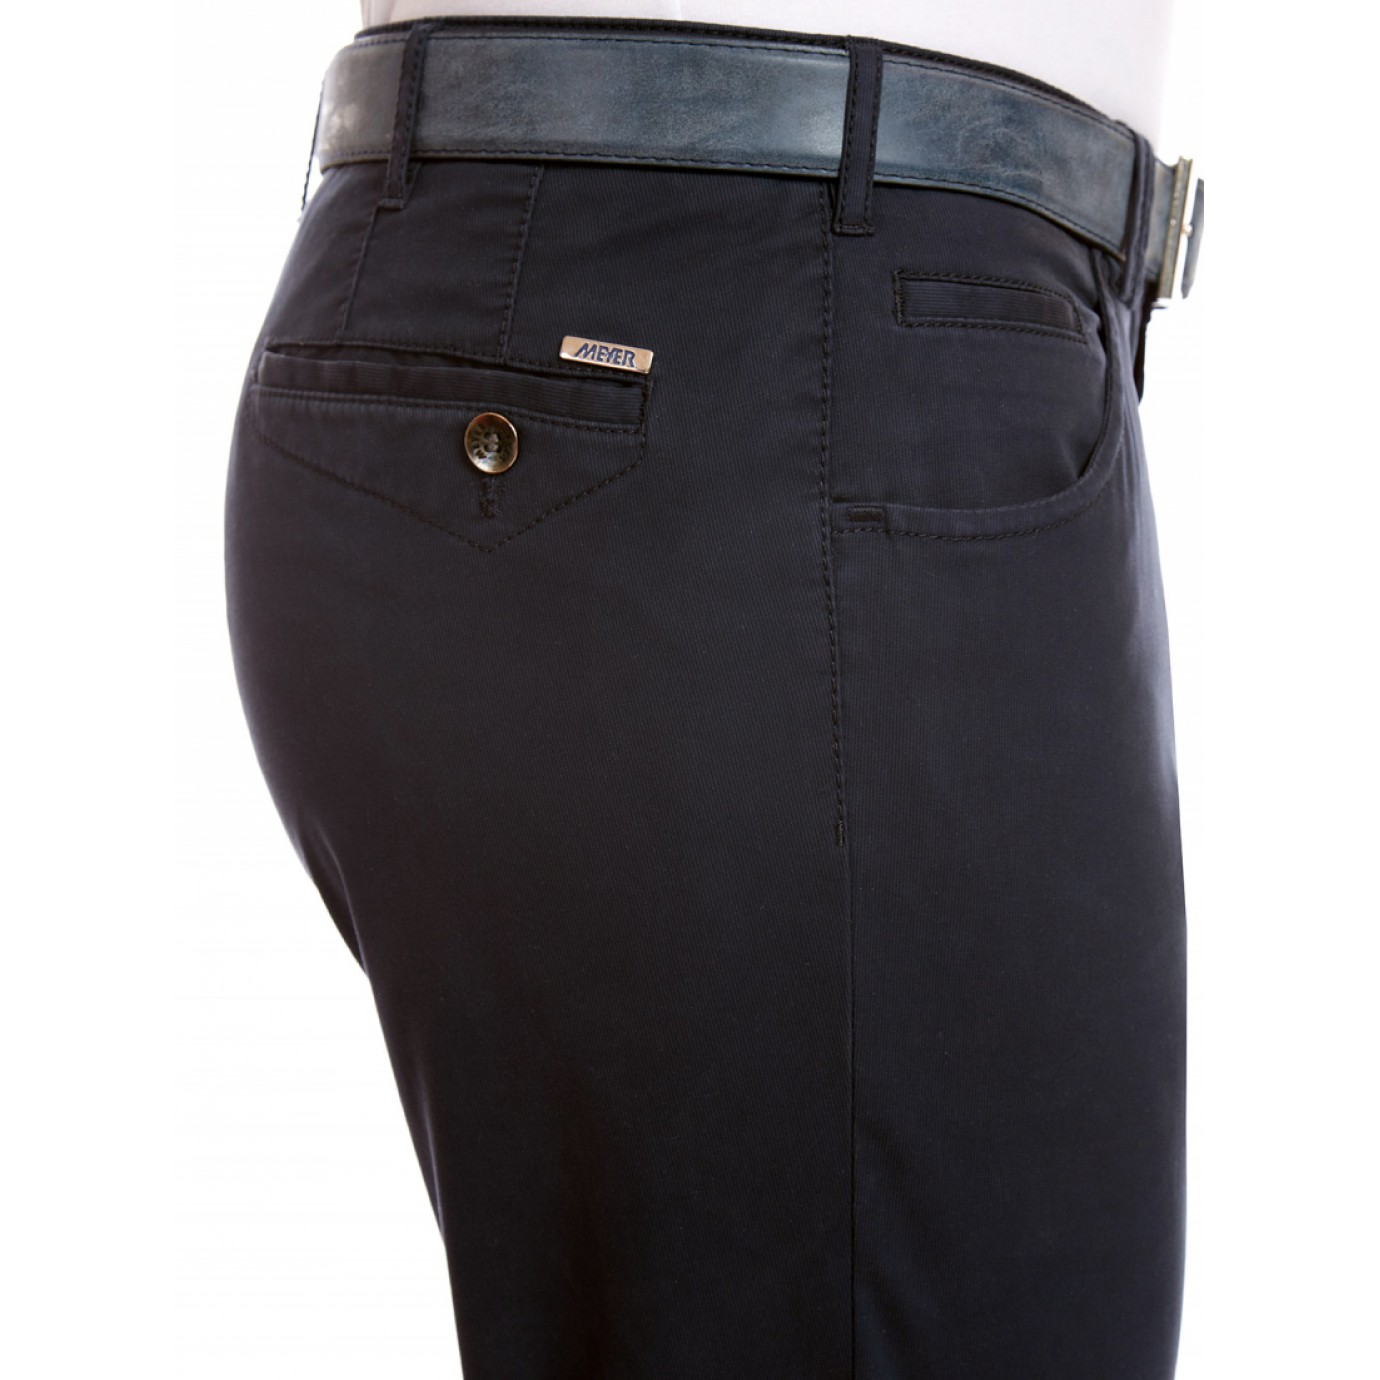 Брюки мужские Meyer Dublin 5-454/19, синие с джинсовым карманом купить вМоскве в интернет-магазине SHOP4BIG - цена, фото, описание